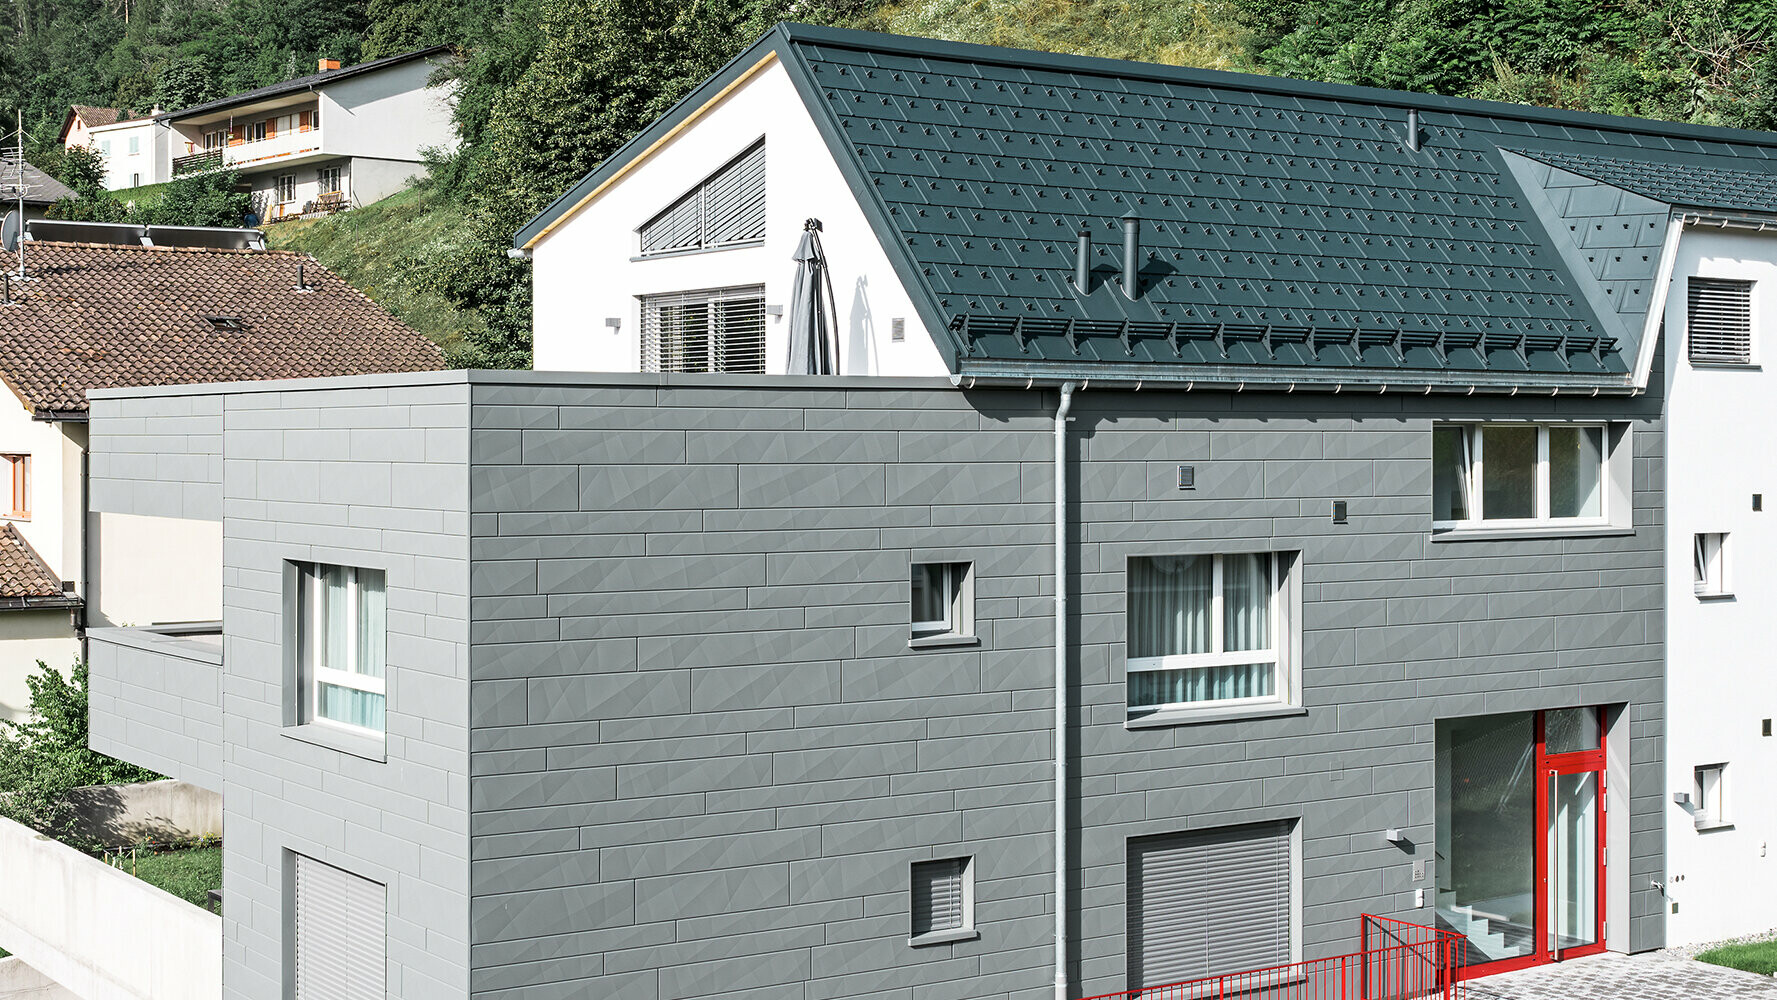 Moderenes Wohnhaus mit PREFA Dach und Fassade in zwei verschiedenen Grautönen